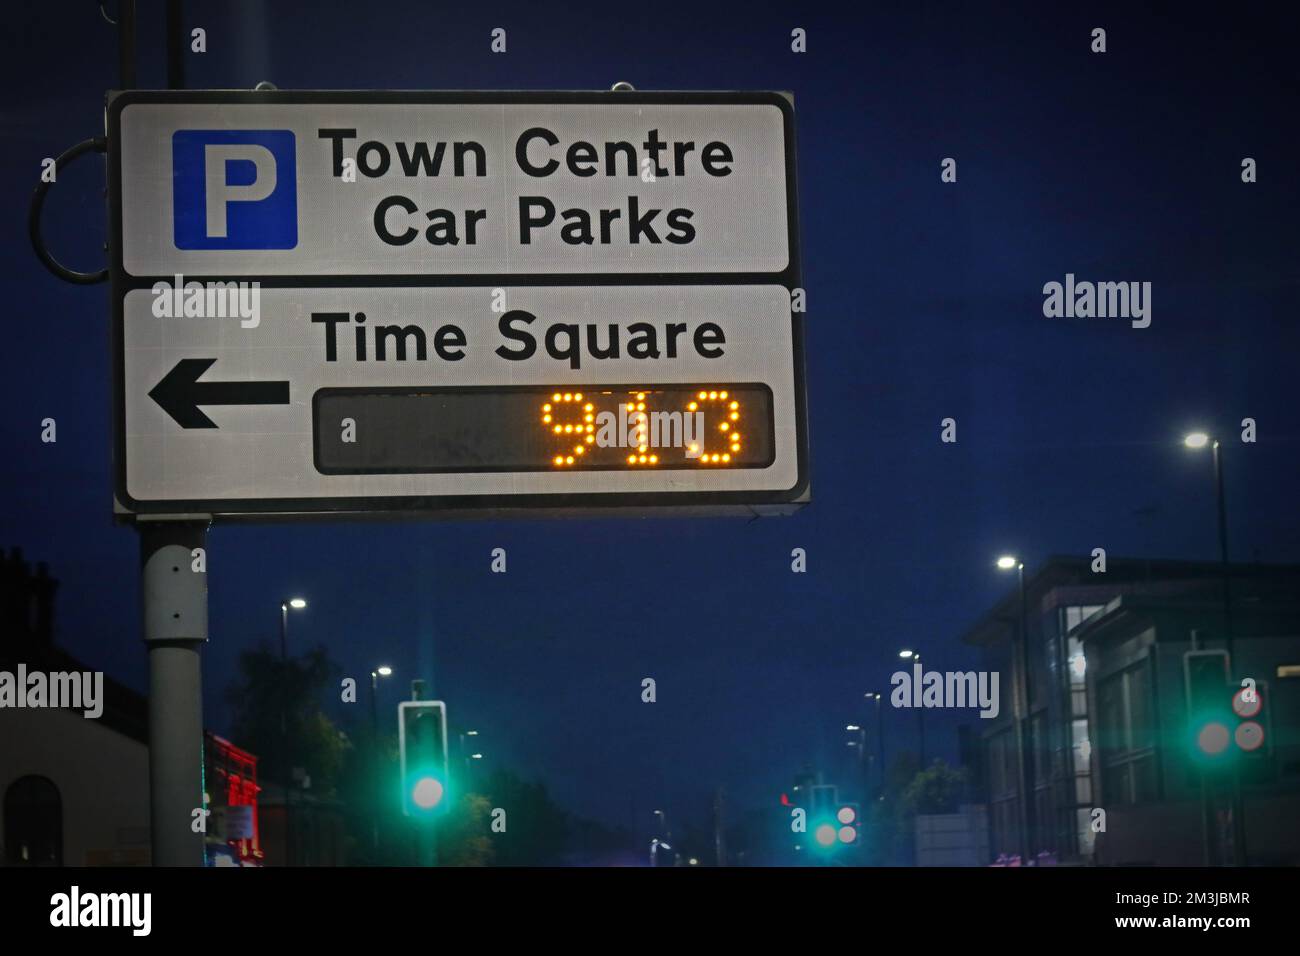 Parking du centre-ville de Warrington, panneau parkings, panneau Time Square indiquant 913 places gratuites, Cheshire, Angleterre, Royaume-Uni, WA1 Banque D'Images